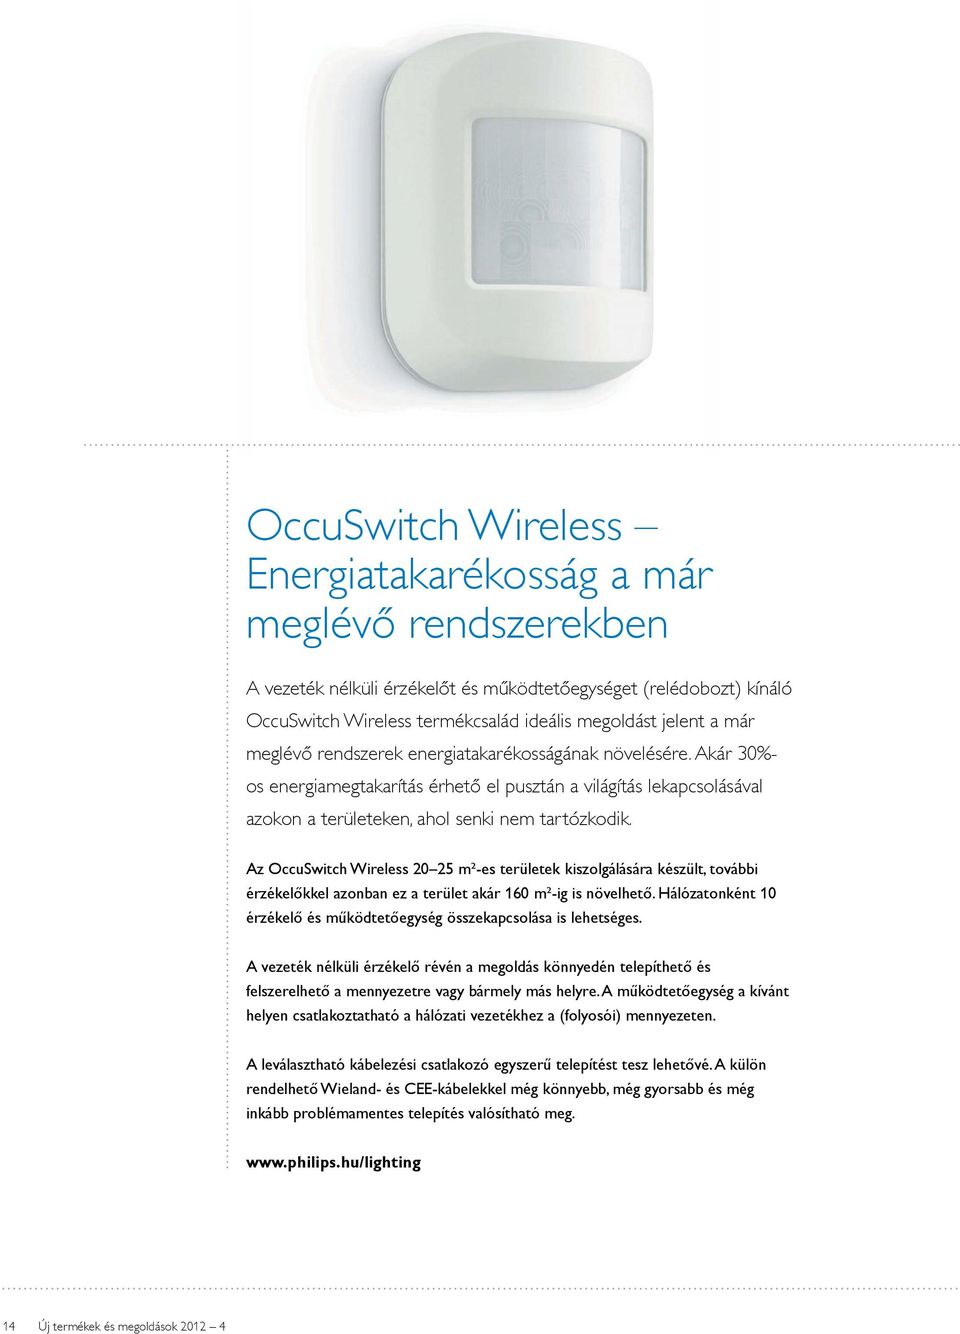 Az OccuSwitch Wireless 20 25 m²-es területek kiszolgálására készült, további érzékelőkkel azonban ez a terület akár 160 m²-ig is növelhető.